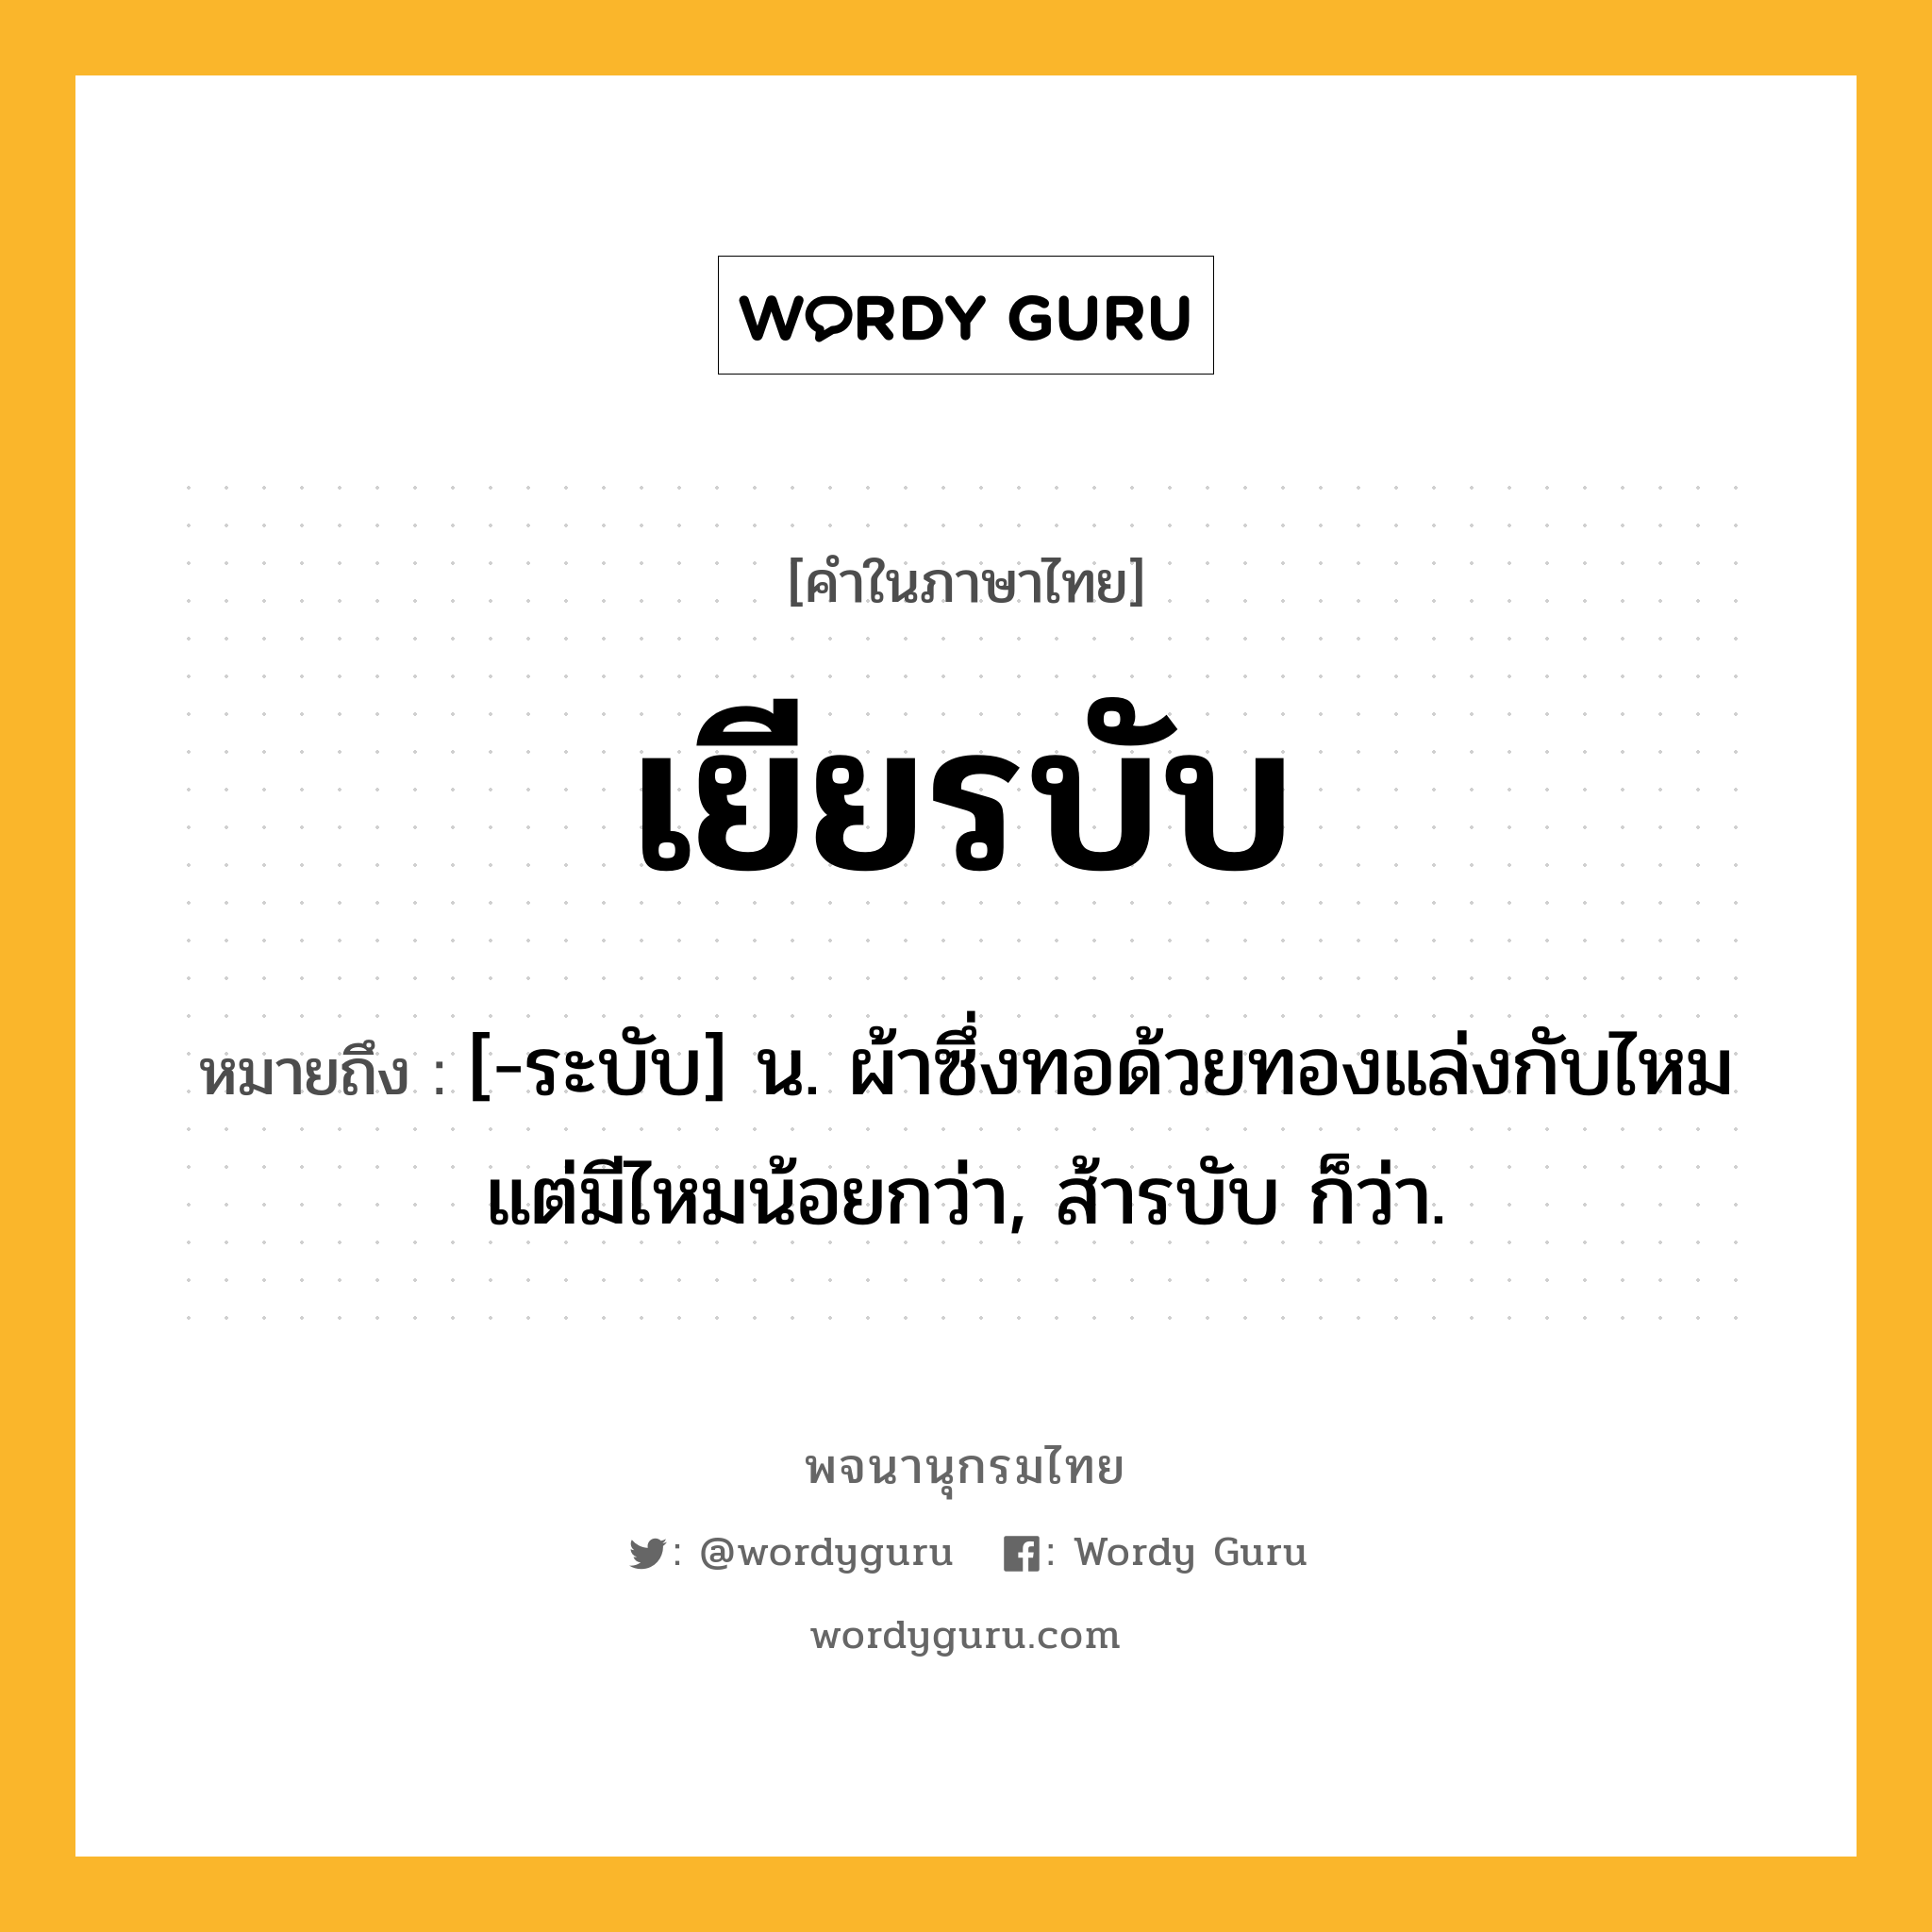 เยียรบับ ความหมาย หมายถึงอะไร?, คำในภาษาไทย เยียรบับ หมายถึง [-ระบับ] น. ผ้าซึ่งทอด้วยทองแล่งกับไหมแต่มีไหมน้อยกว่า, ส้ารบับ ก็ว่า.